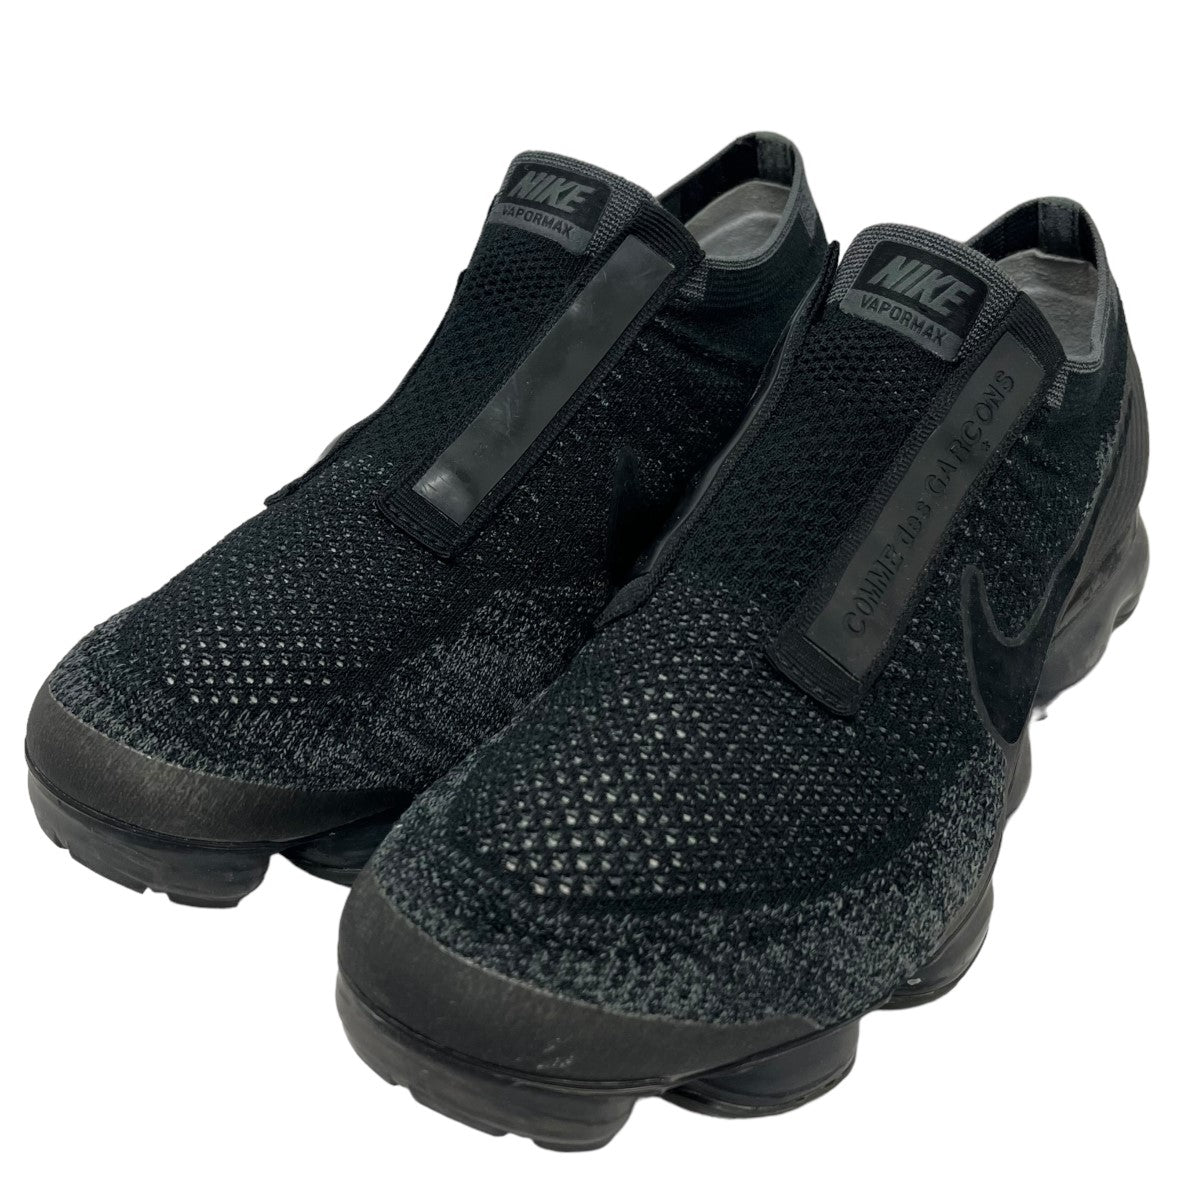 Nike comme des garcons AIR VAPORMAX 28cm靴/シューズ - www.slsr.com.au